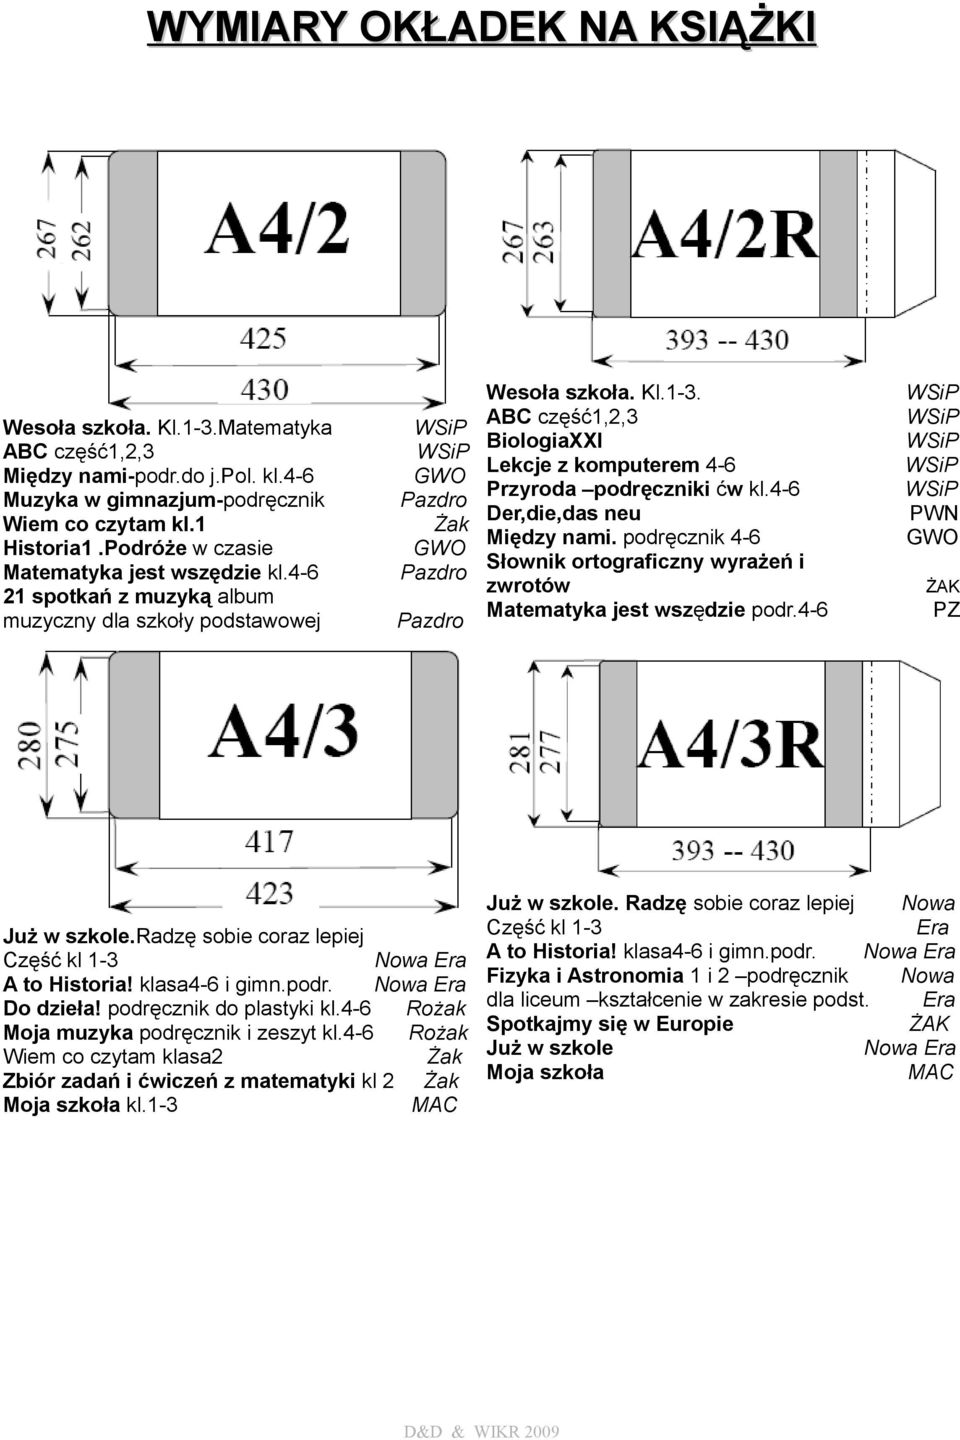 ABC część1,2,3 BiologiaXXI Lekcje z komputerem 4-6 Przyroda podręczniki ćw kl.4-6 Der,die,das neu Między nami. podręcznik 4-6 Słownik ortograficzny wyrażeń i zwrotów Matematyka jest wszędzie podr.